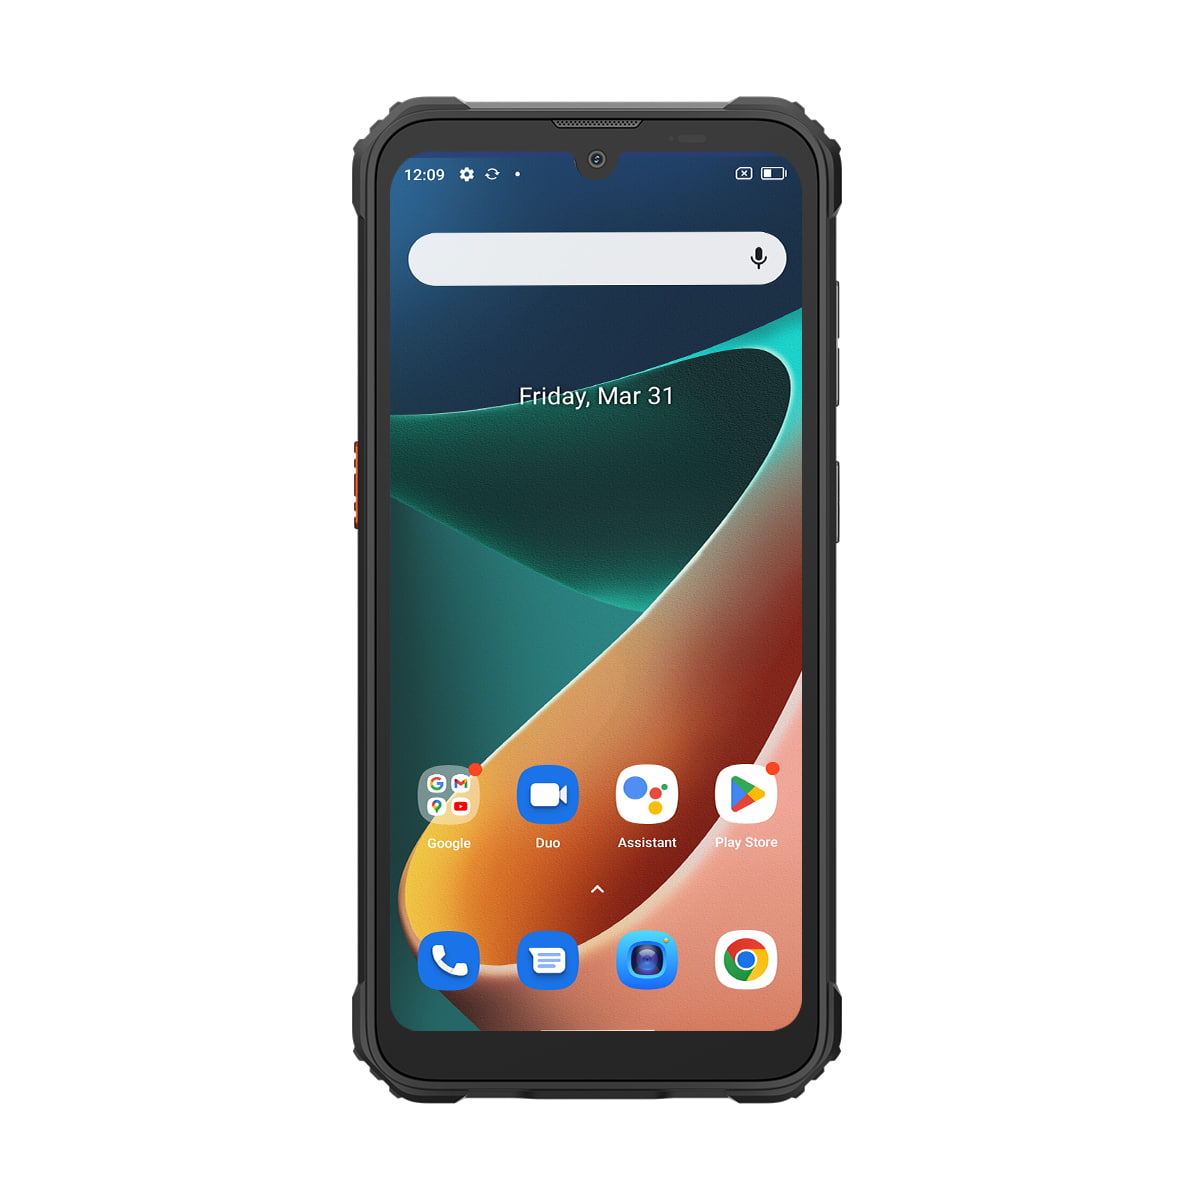 Blackview BV5300 Pro, Smartphone étanche - Nouveauté 2023 - Android 12, Photo 13 Mpx, Mémoire de 64Go, 4Go de RAM, NFC, Charge inversée, 6 580 mAh